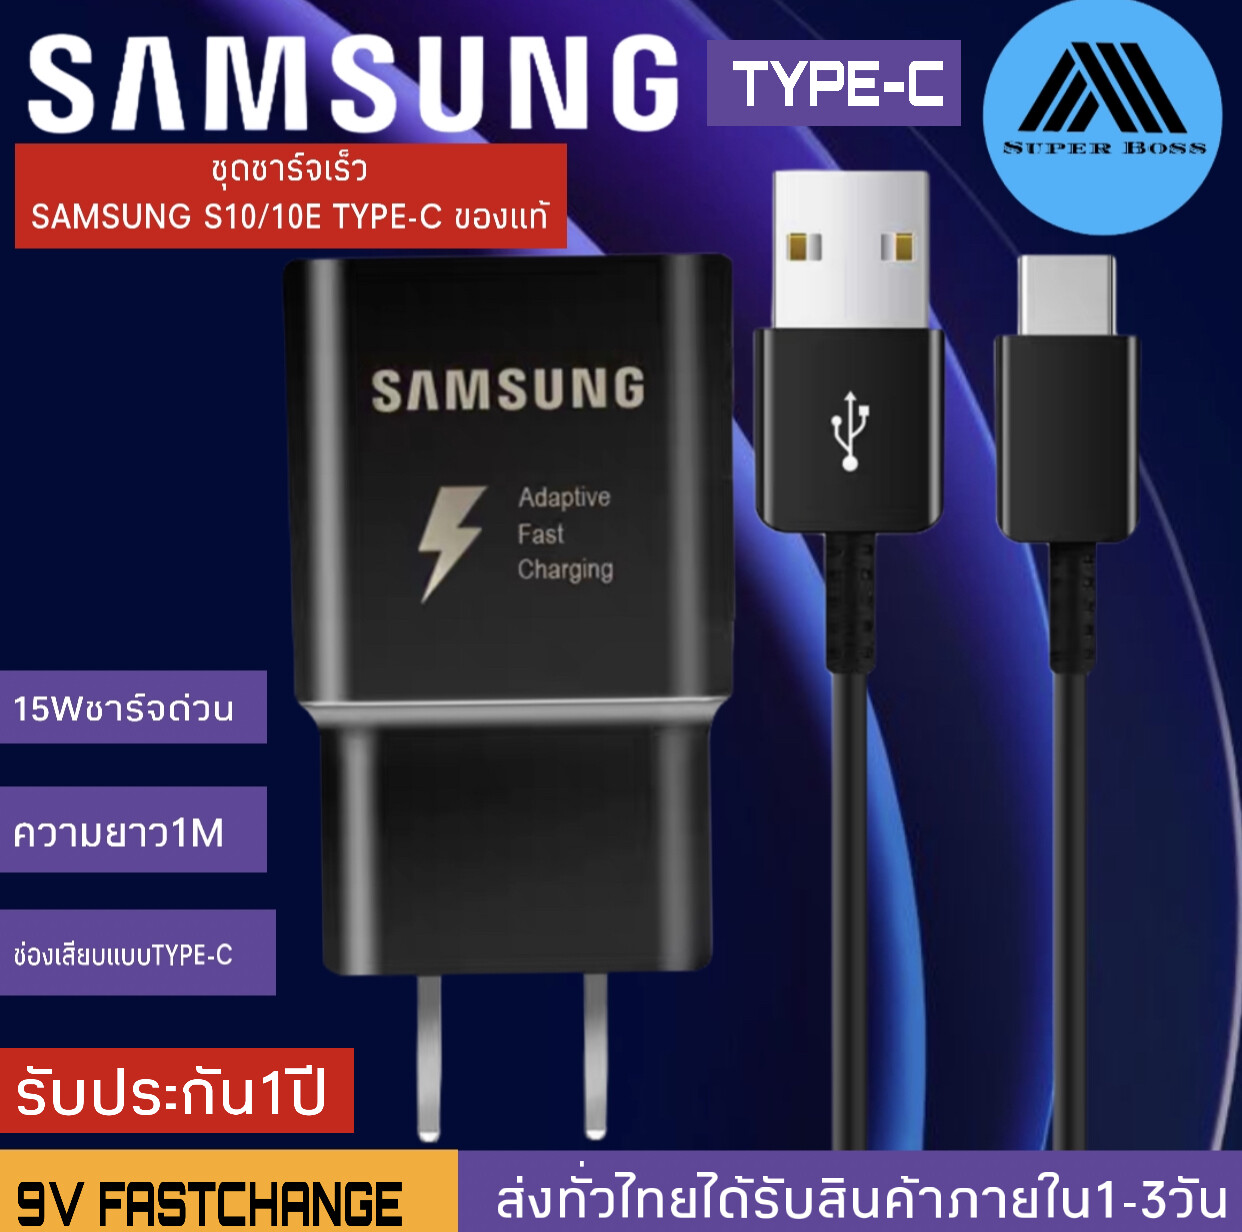 ชุดชาร์จ Samsung S10ของแท้ Adapter Fast Charging รองรับ รุ่นS8/S8+/S9/S9+/S10/S10E/G9500/G9600/A8S/A9 star/A9+/C5pro/C7pro/C9pro/note8/note9 รับประกัน1ปี BY SUPER-BOSS